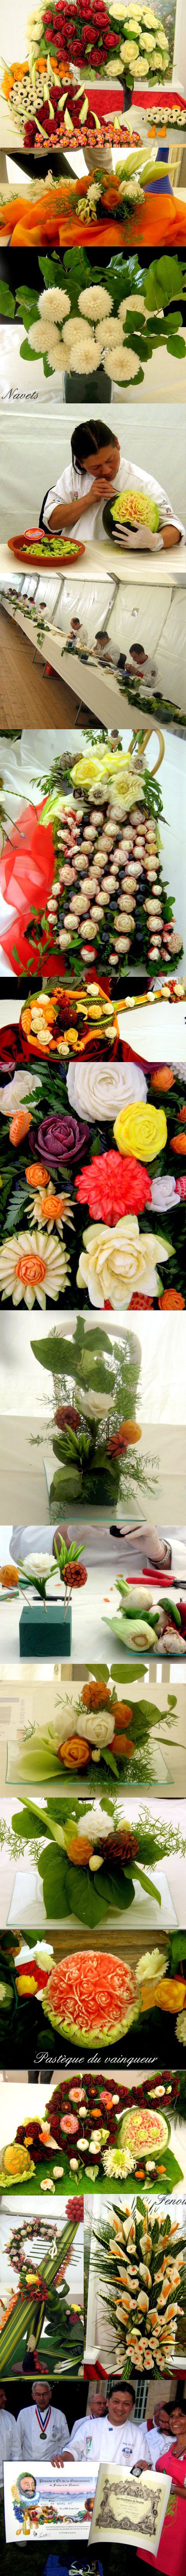 sculptures florales sur fruits